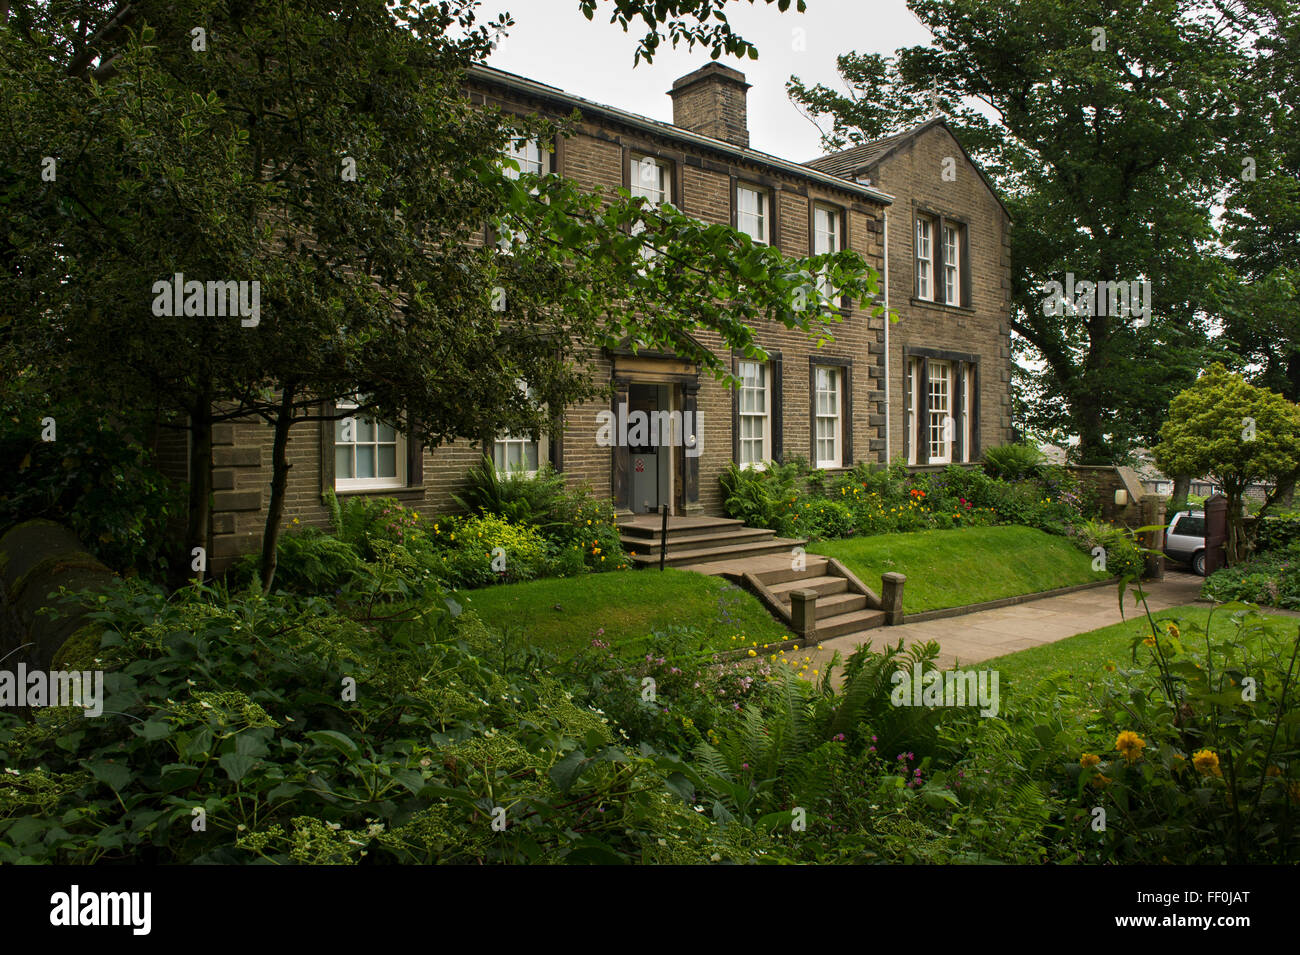 Bronte Parsonage Museum & Garten - historisches Haus, in dem die Familie Bronte lebte (literarisches und kulturelles Erbe) - Haworth, West Yorkshire, England, Großbritannien. Stockfoto